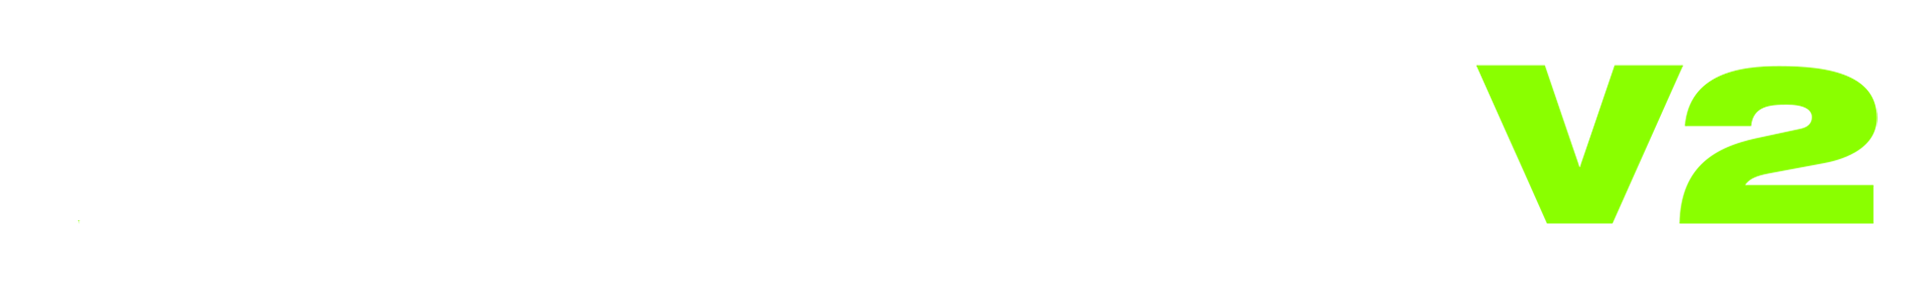 Weed lab logo